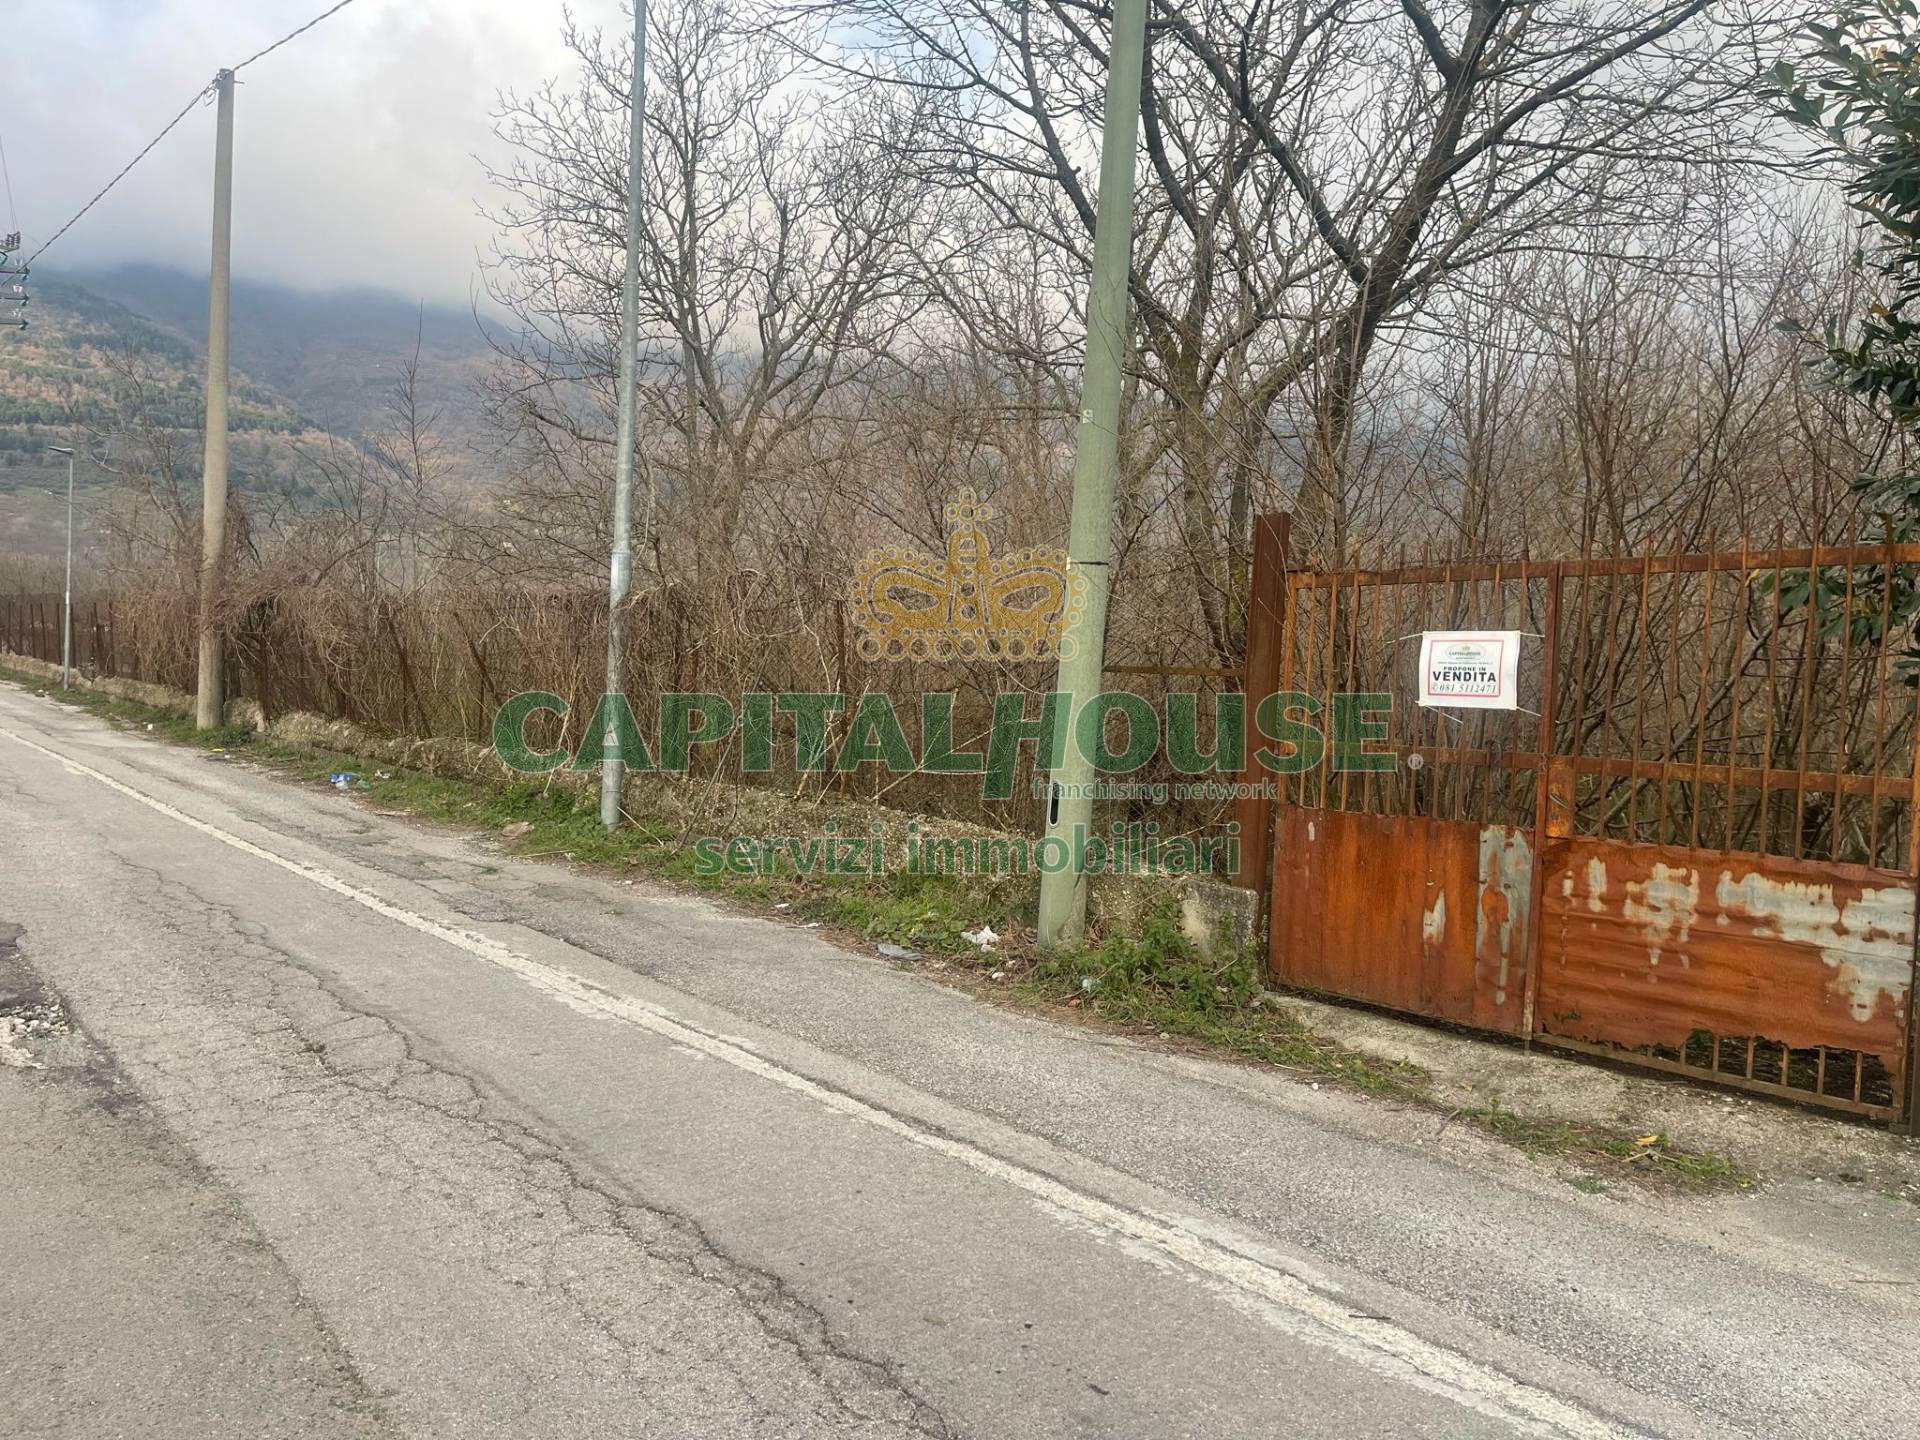 Terreno Agricolo in vendita a Avella, 9999 locali, prezzo € 40.000 | PortaleAgenzieImmobiliari.it